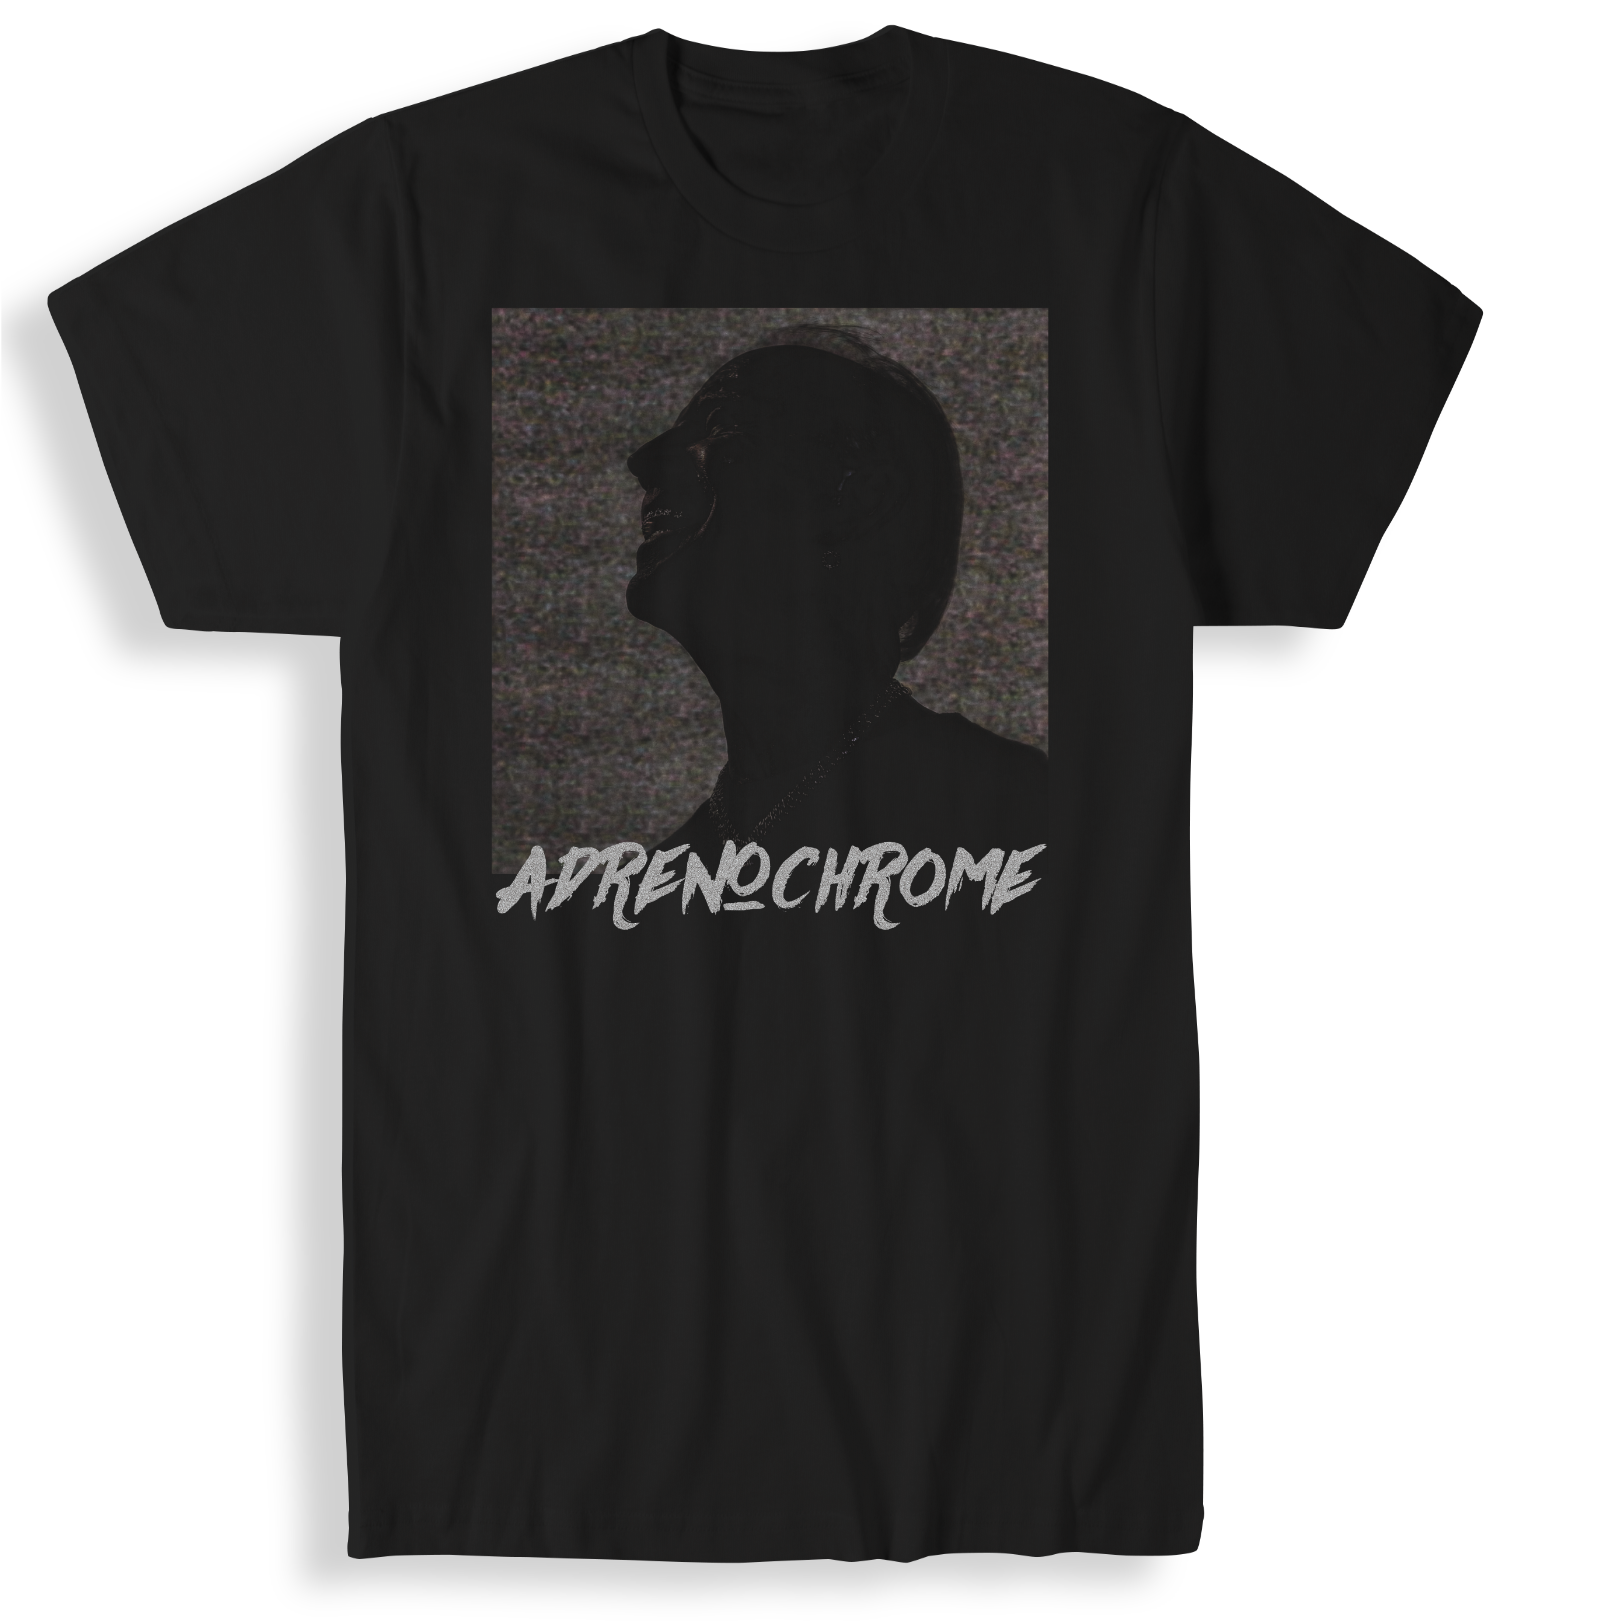 Adrenochrome! T-Shirt